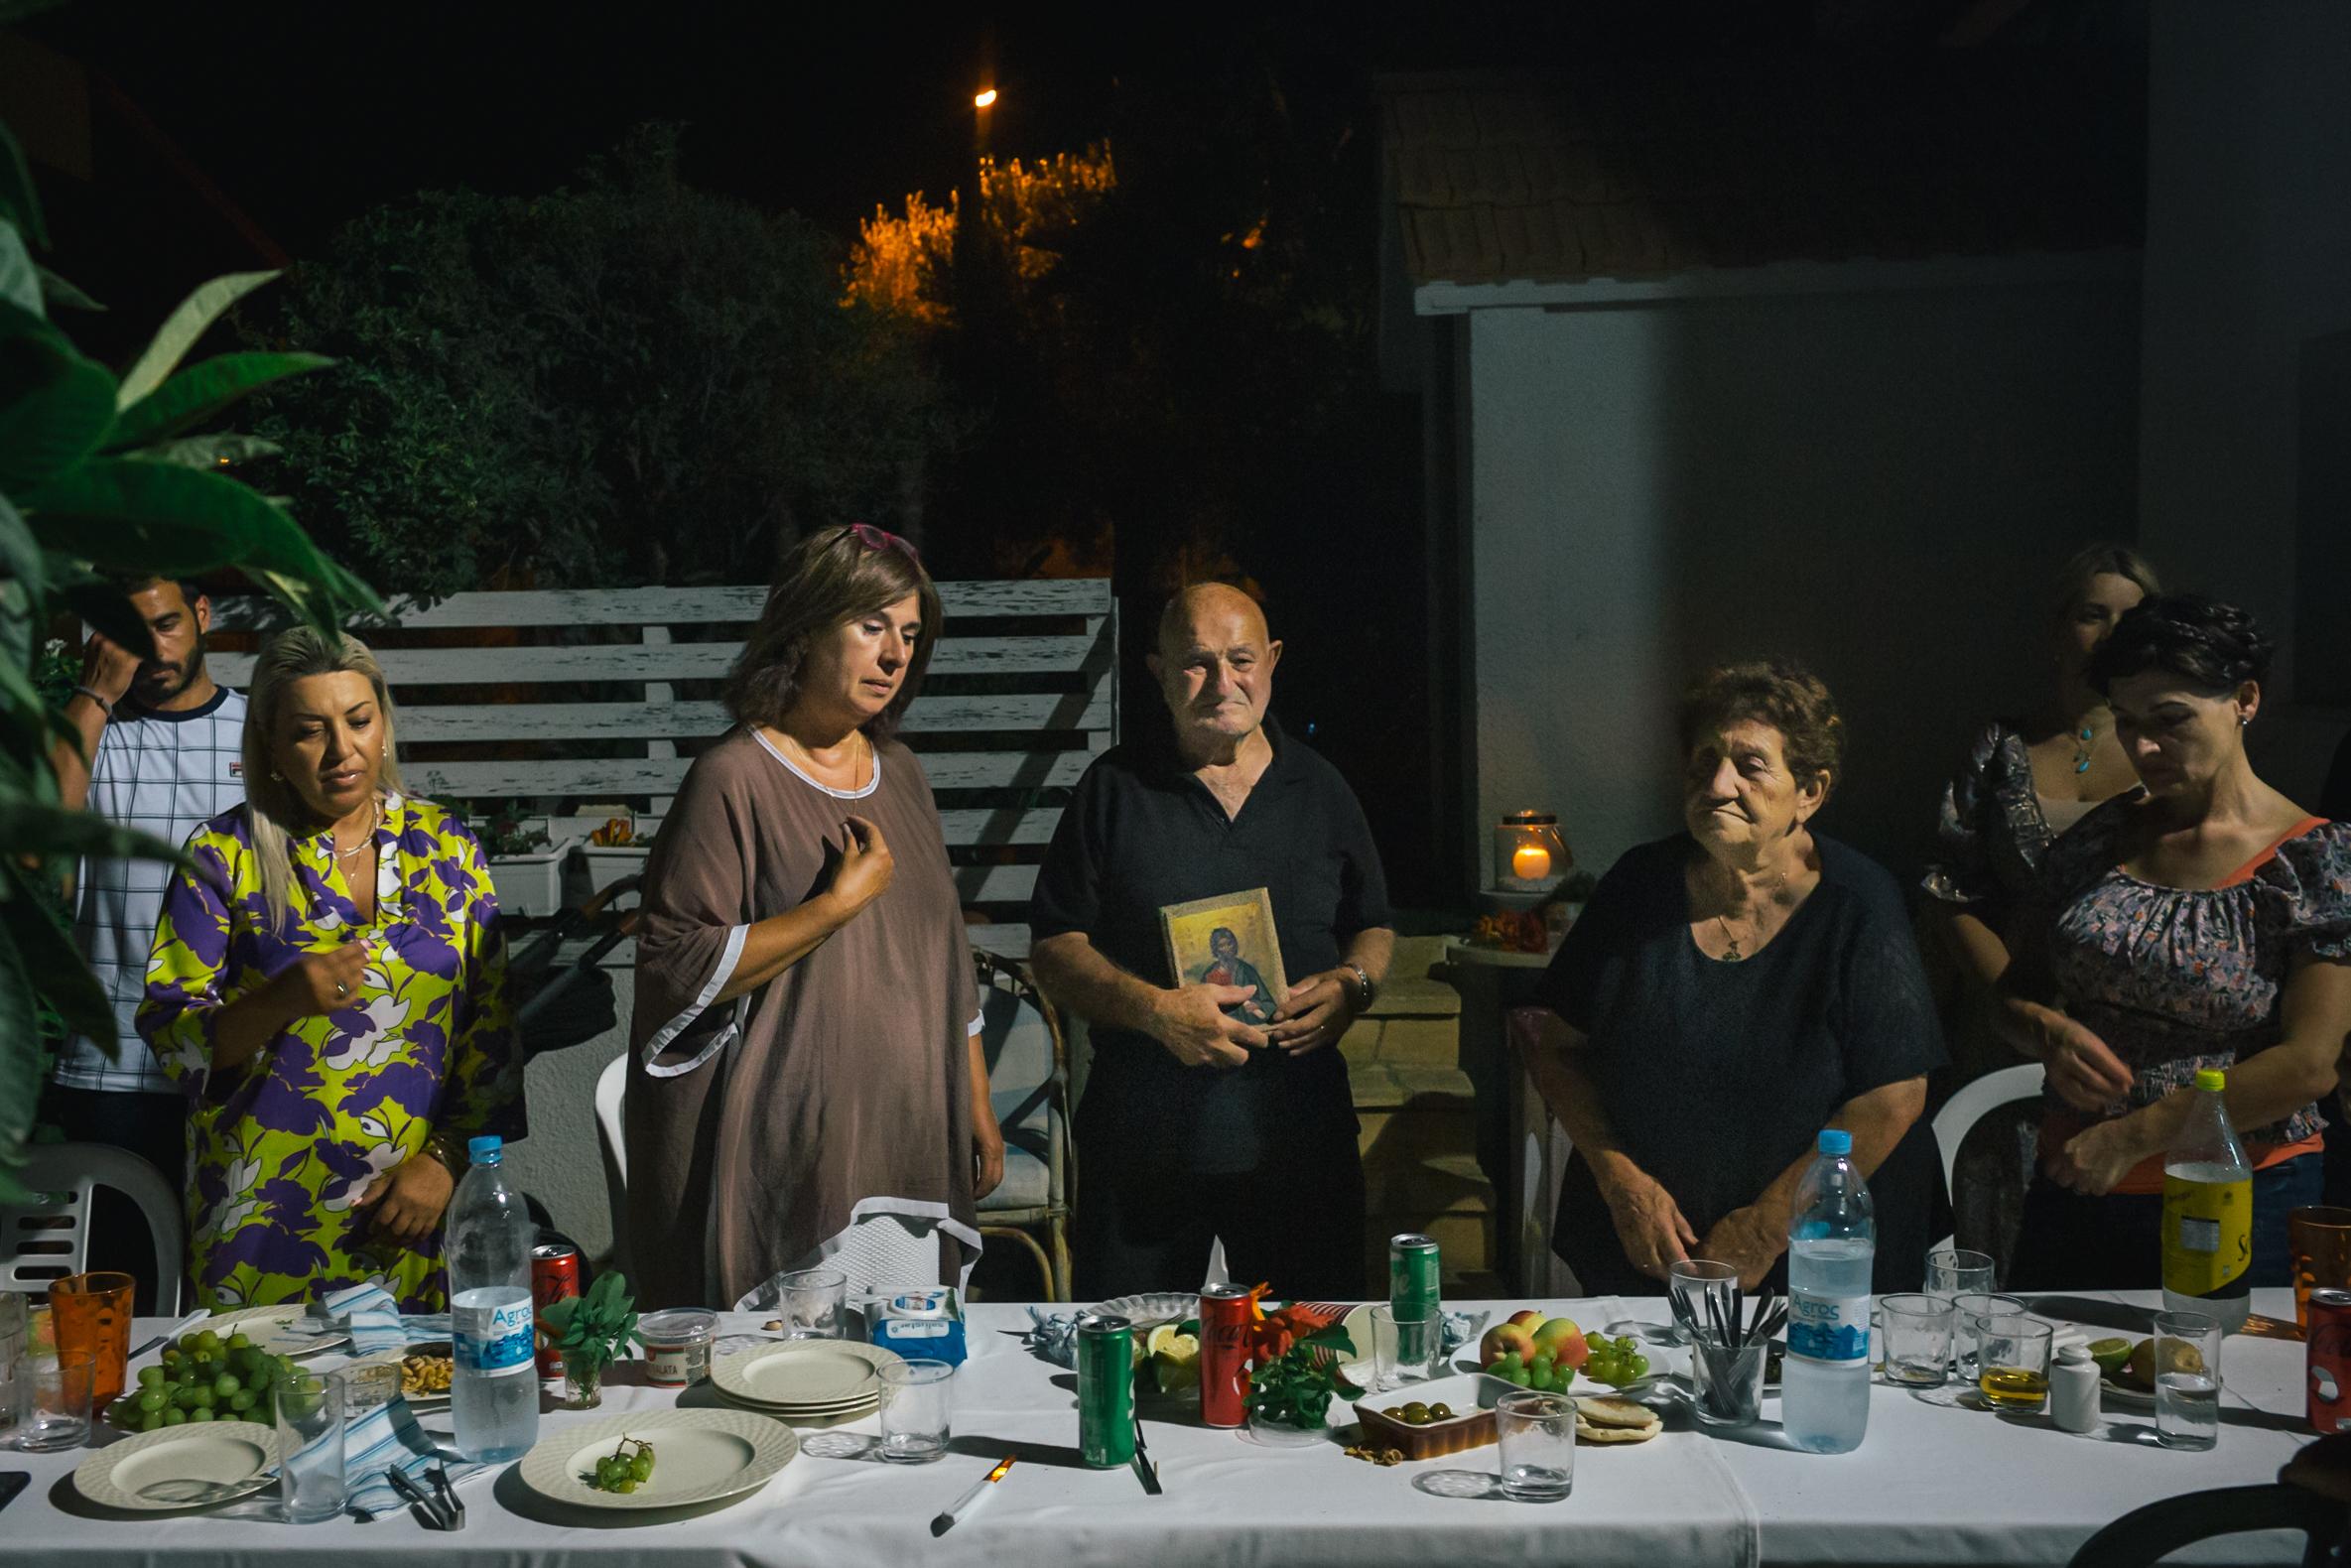 Ghost of Famagusta - 16/07/2021, Zypern: Tasoula Hadjitofi betet am Vorabend...